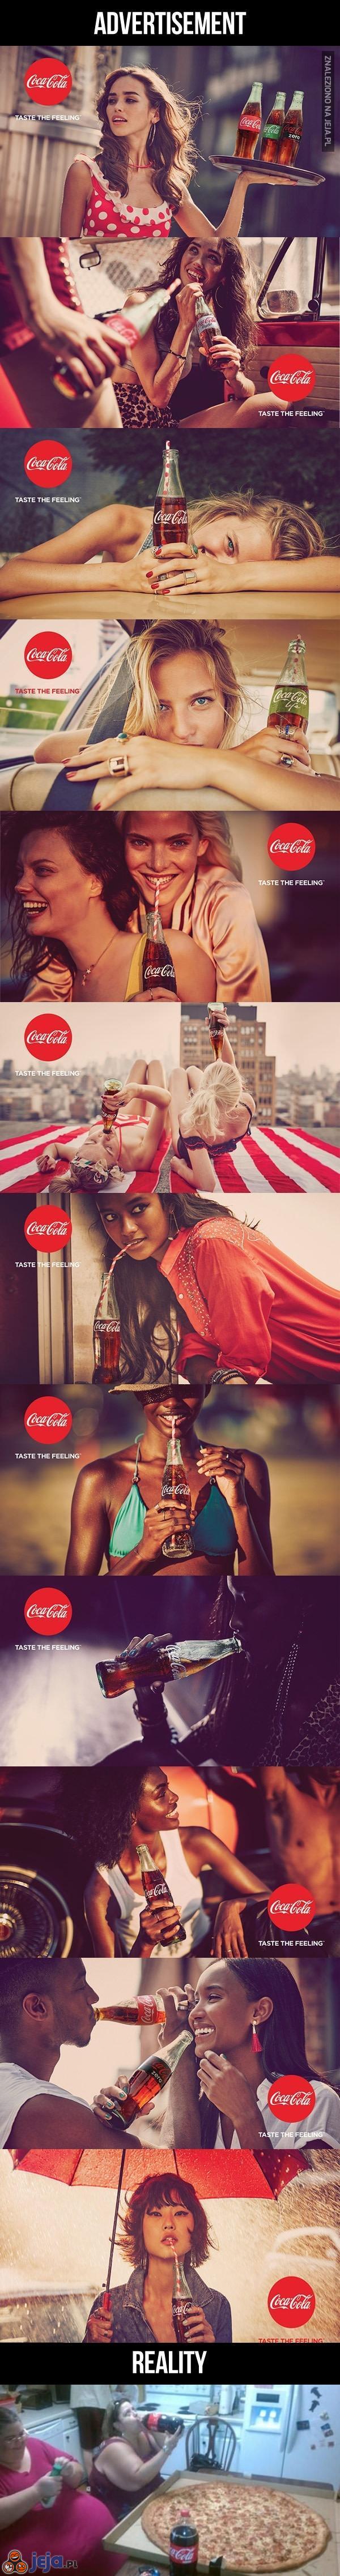 Coca-Cola: reklamy vs rzeczywistość